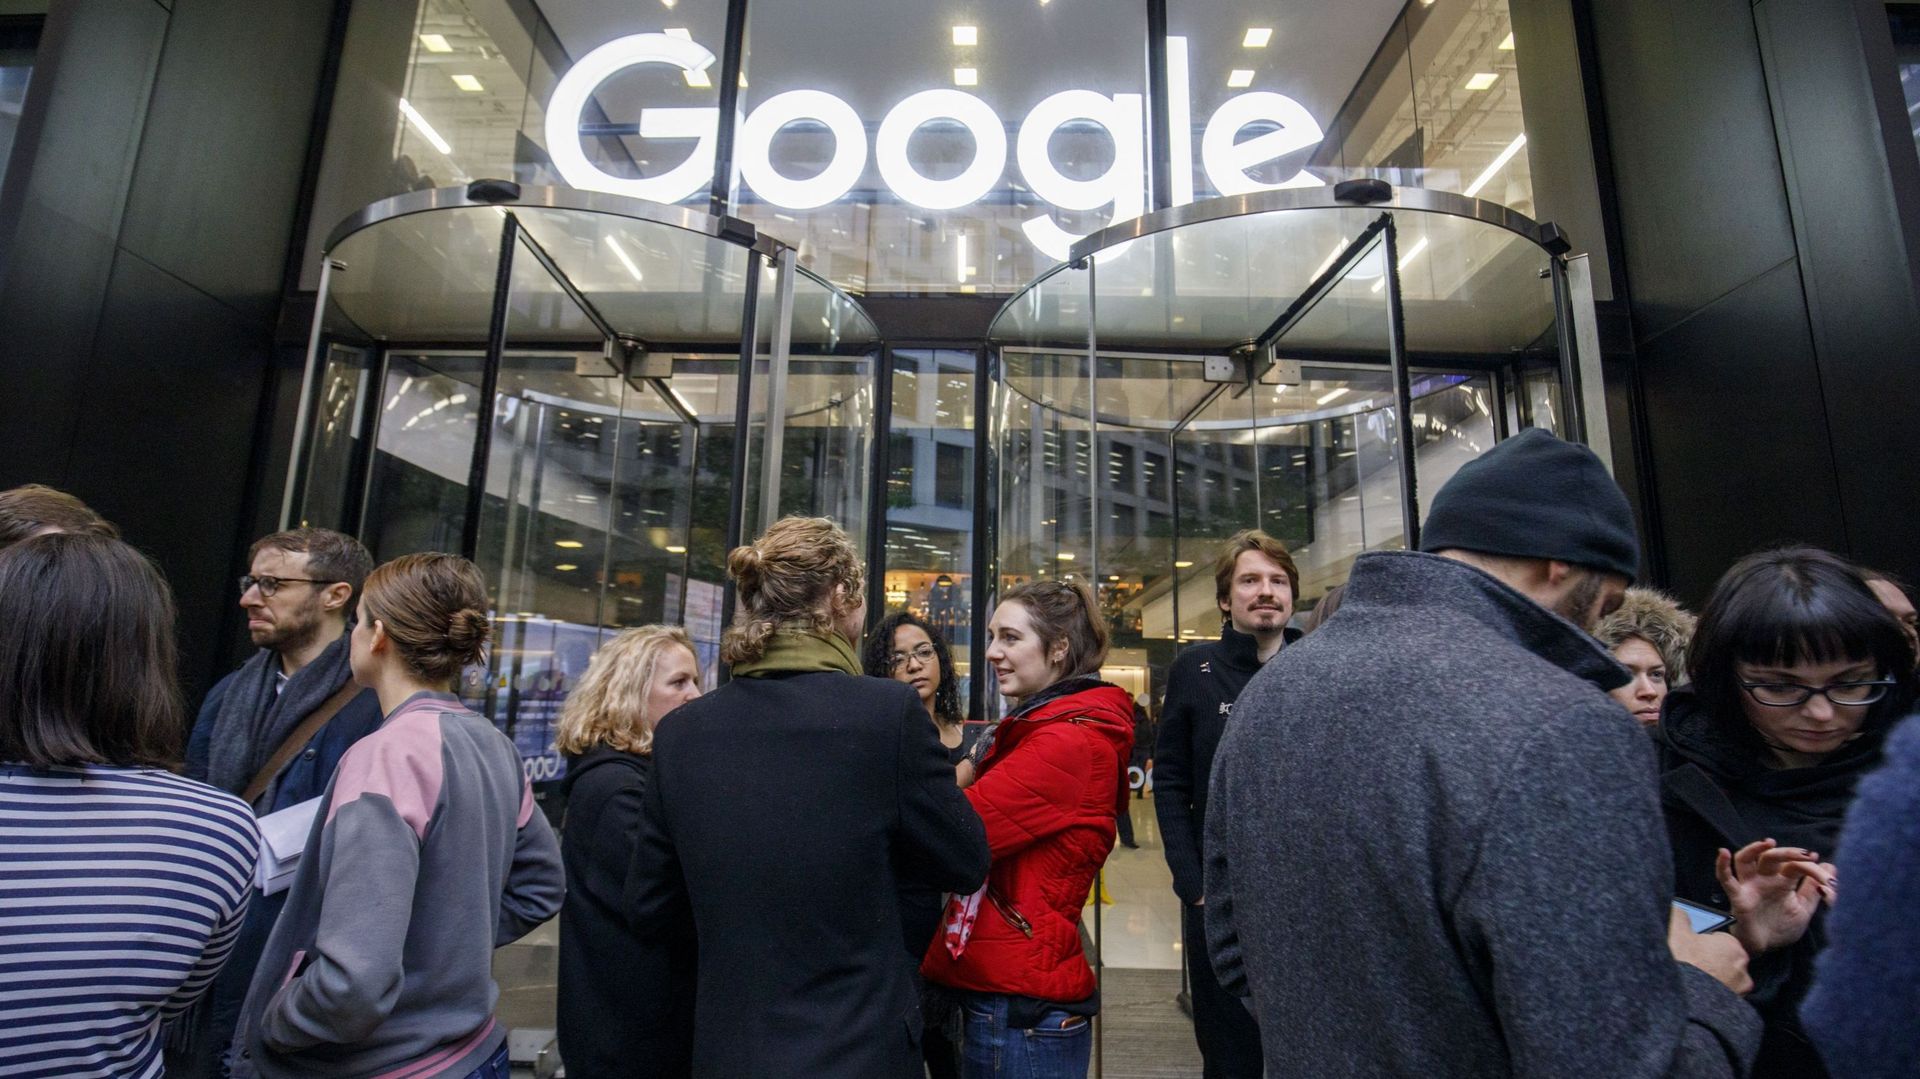 Dans la ville de Rennes, Google s'est faite éjecter par un moteur de recherche français libre Qwant.